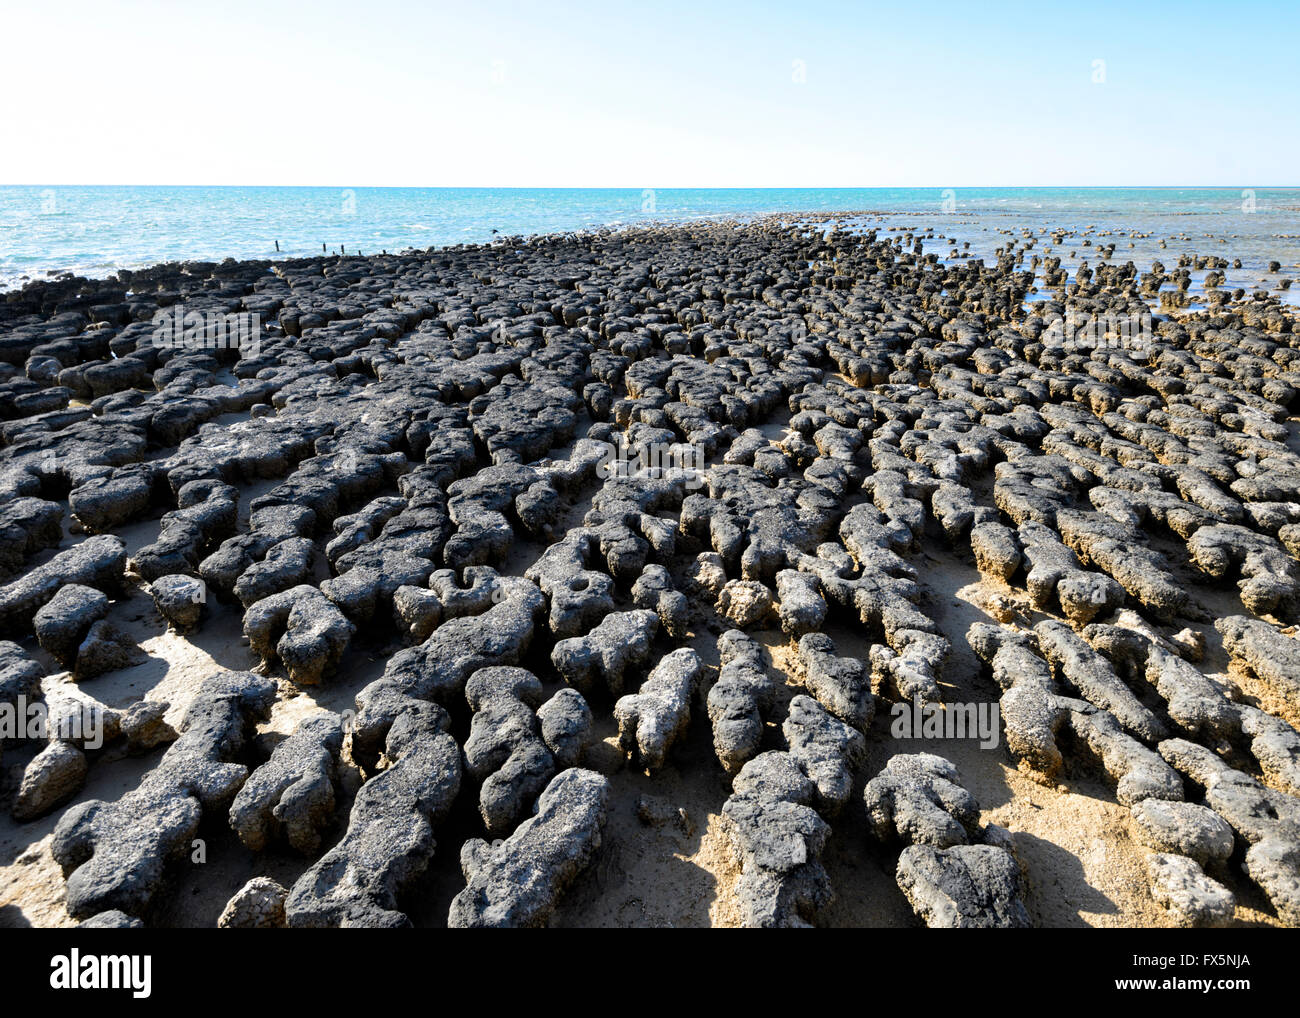 Les stromatolites, plus vieux fossiles connus sur terre, Hamelin Pool, la baie Shark, Australie occidentale, WA, Australie, zone du patrimoine mondial Banque D'Images